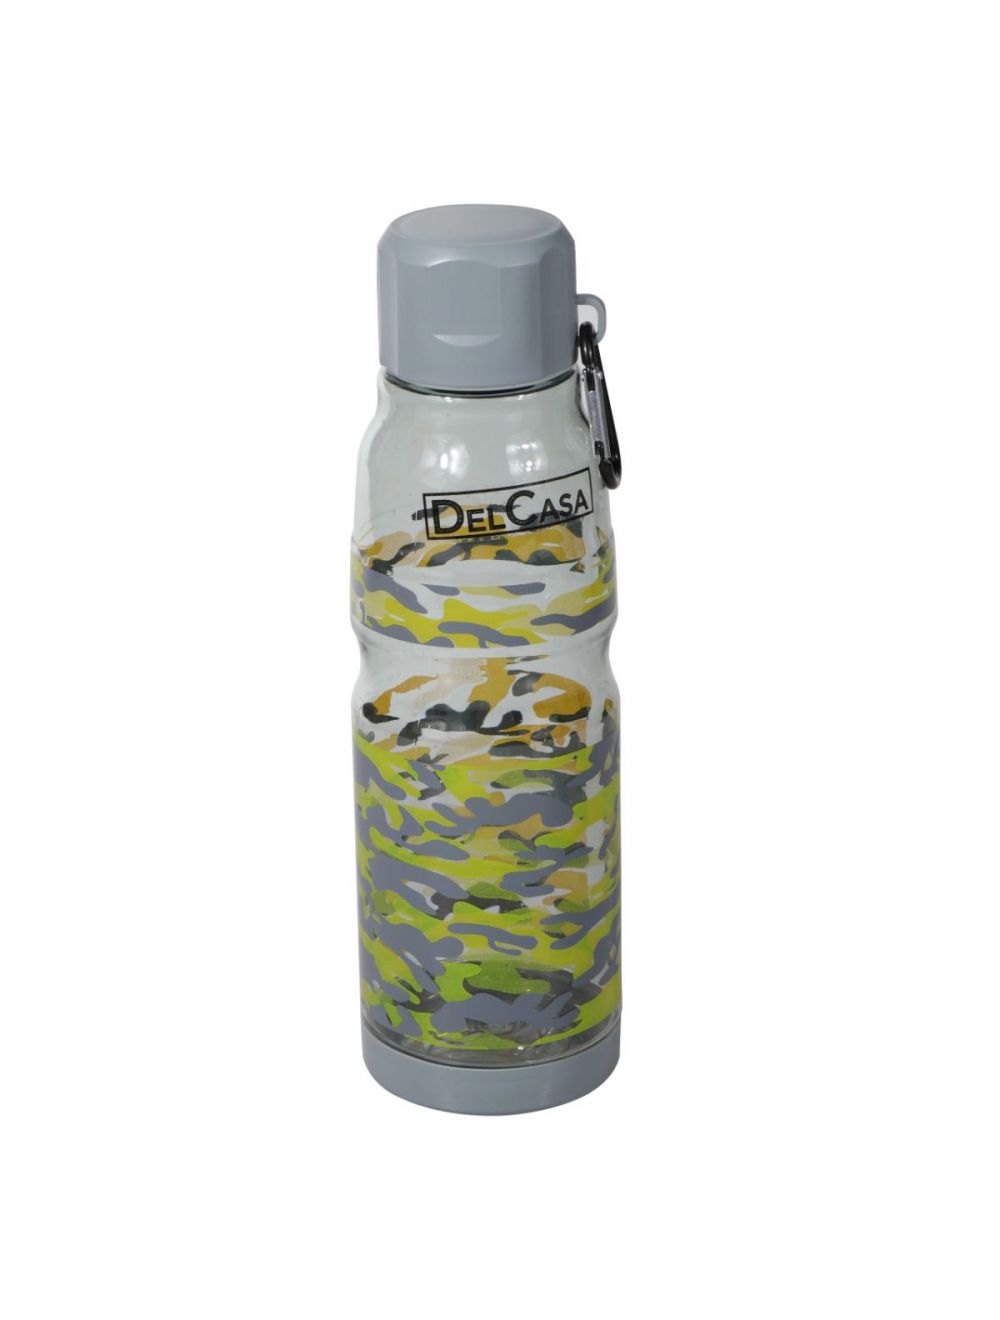 Delcasa 700 ml Water Bottle -DC1348